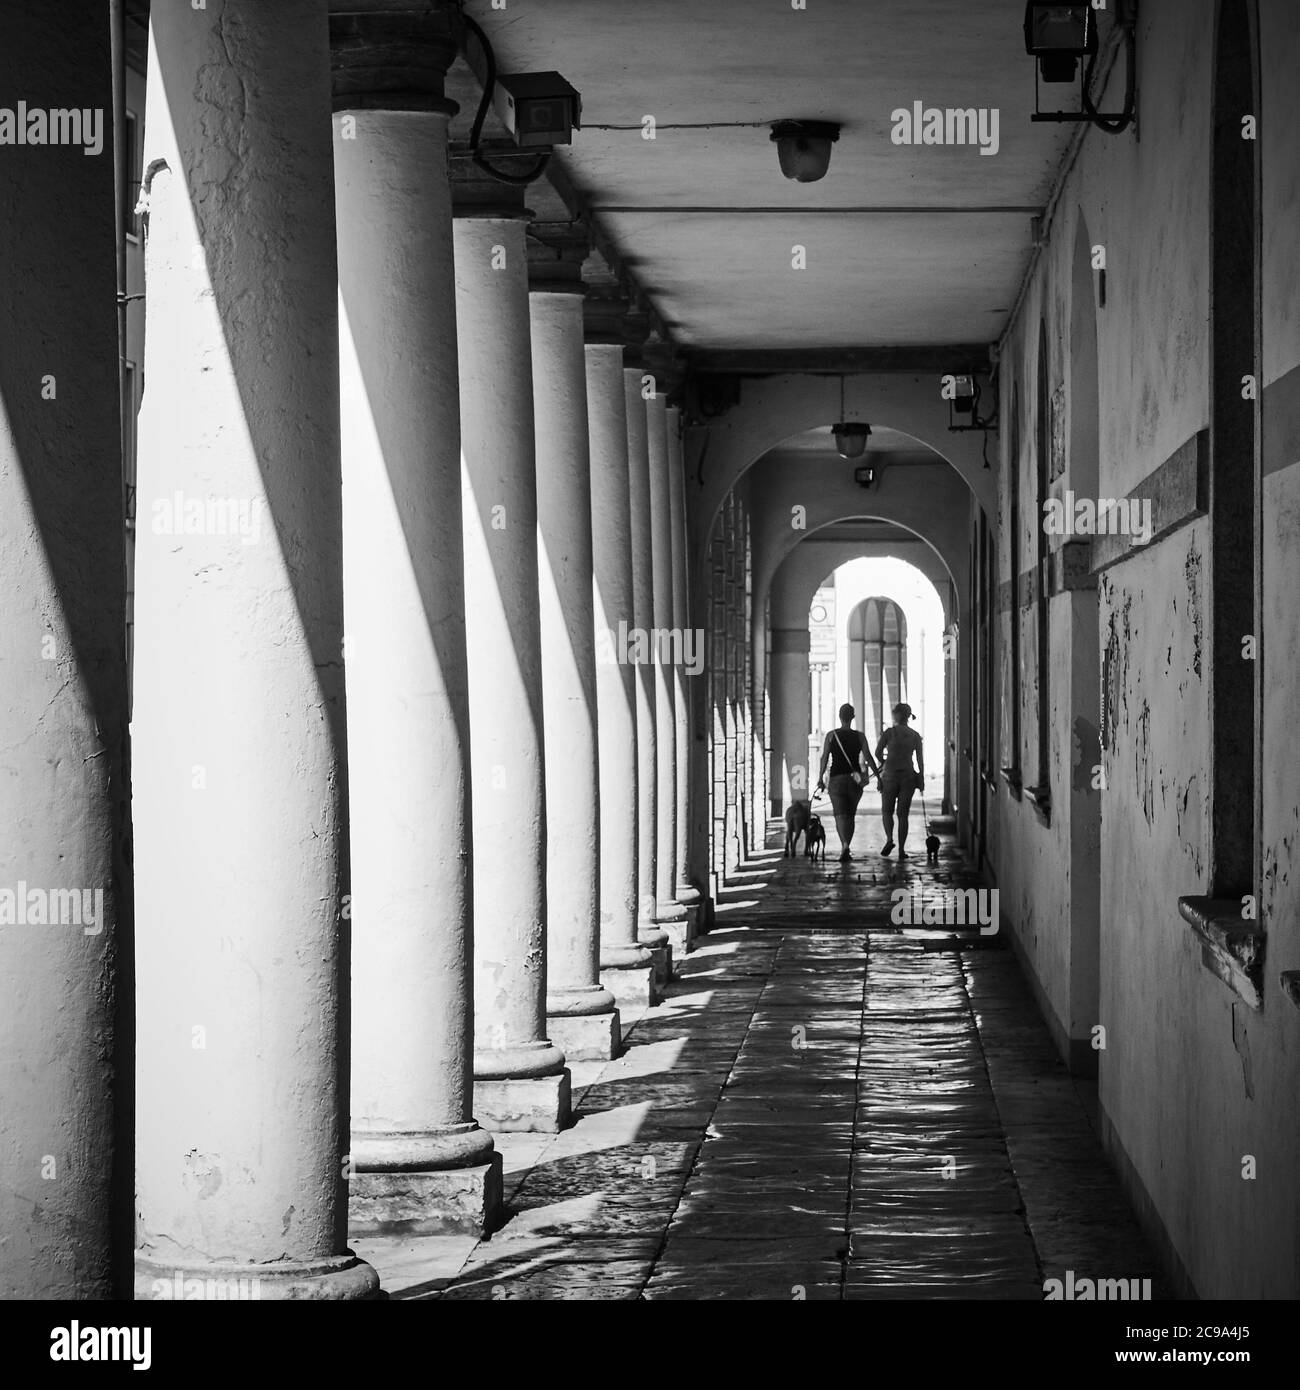 Blick auf die überdachte Galerie an einer Straße in Treviso, Italien. Schwarz-Weiß-Stadtfotografie. Flacher Freiheitsgrad! Stockfoto